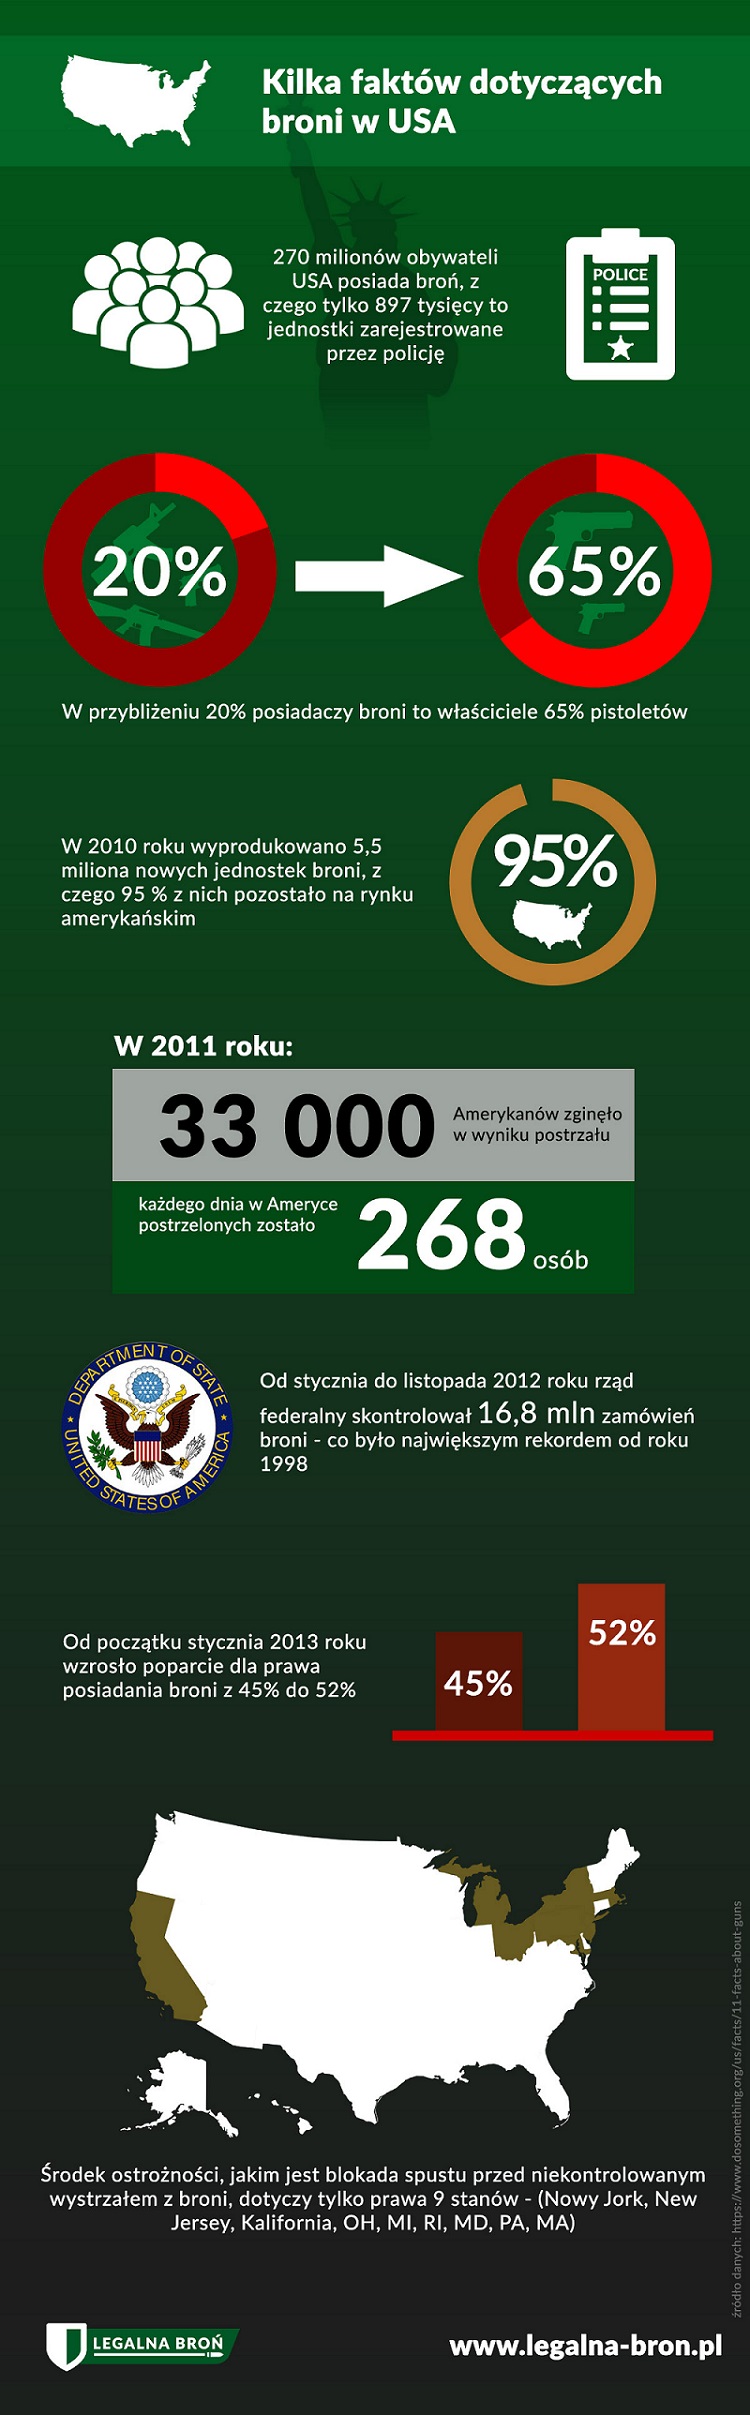 Broń w USA - infografika legalna-bron.pl